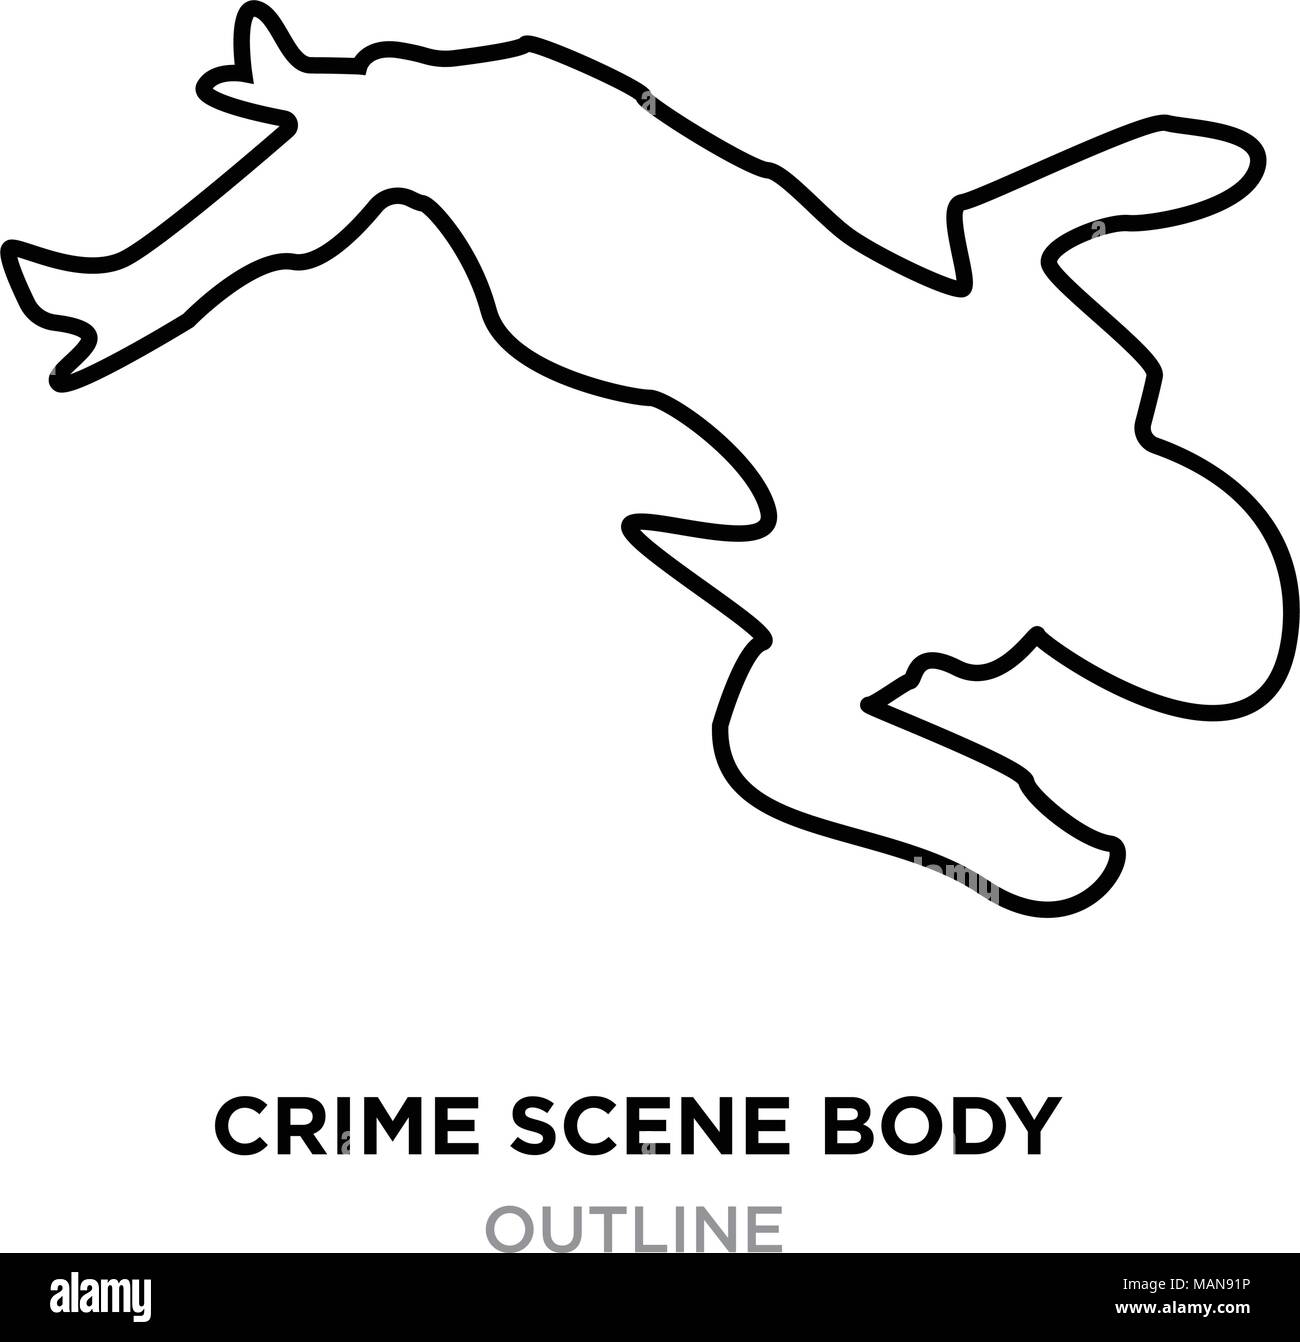 crime scene body outline on white background, vector illustration Stock